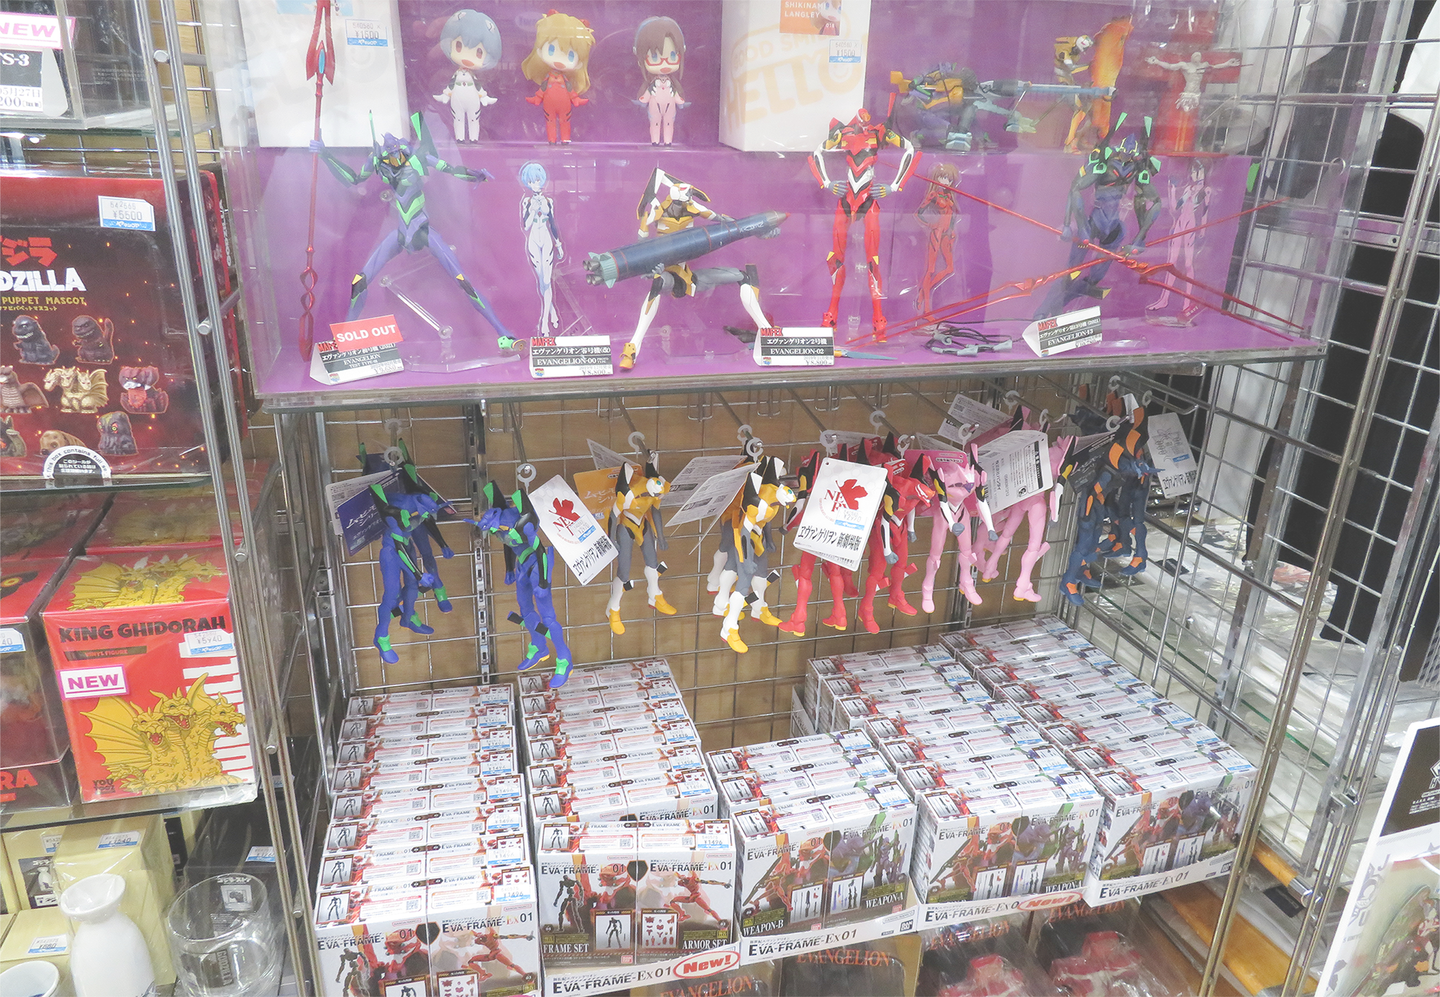 Images of Evangelion merchandise sold at YAMASHIROYA2